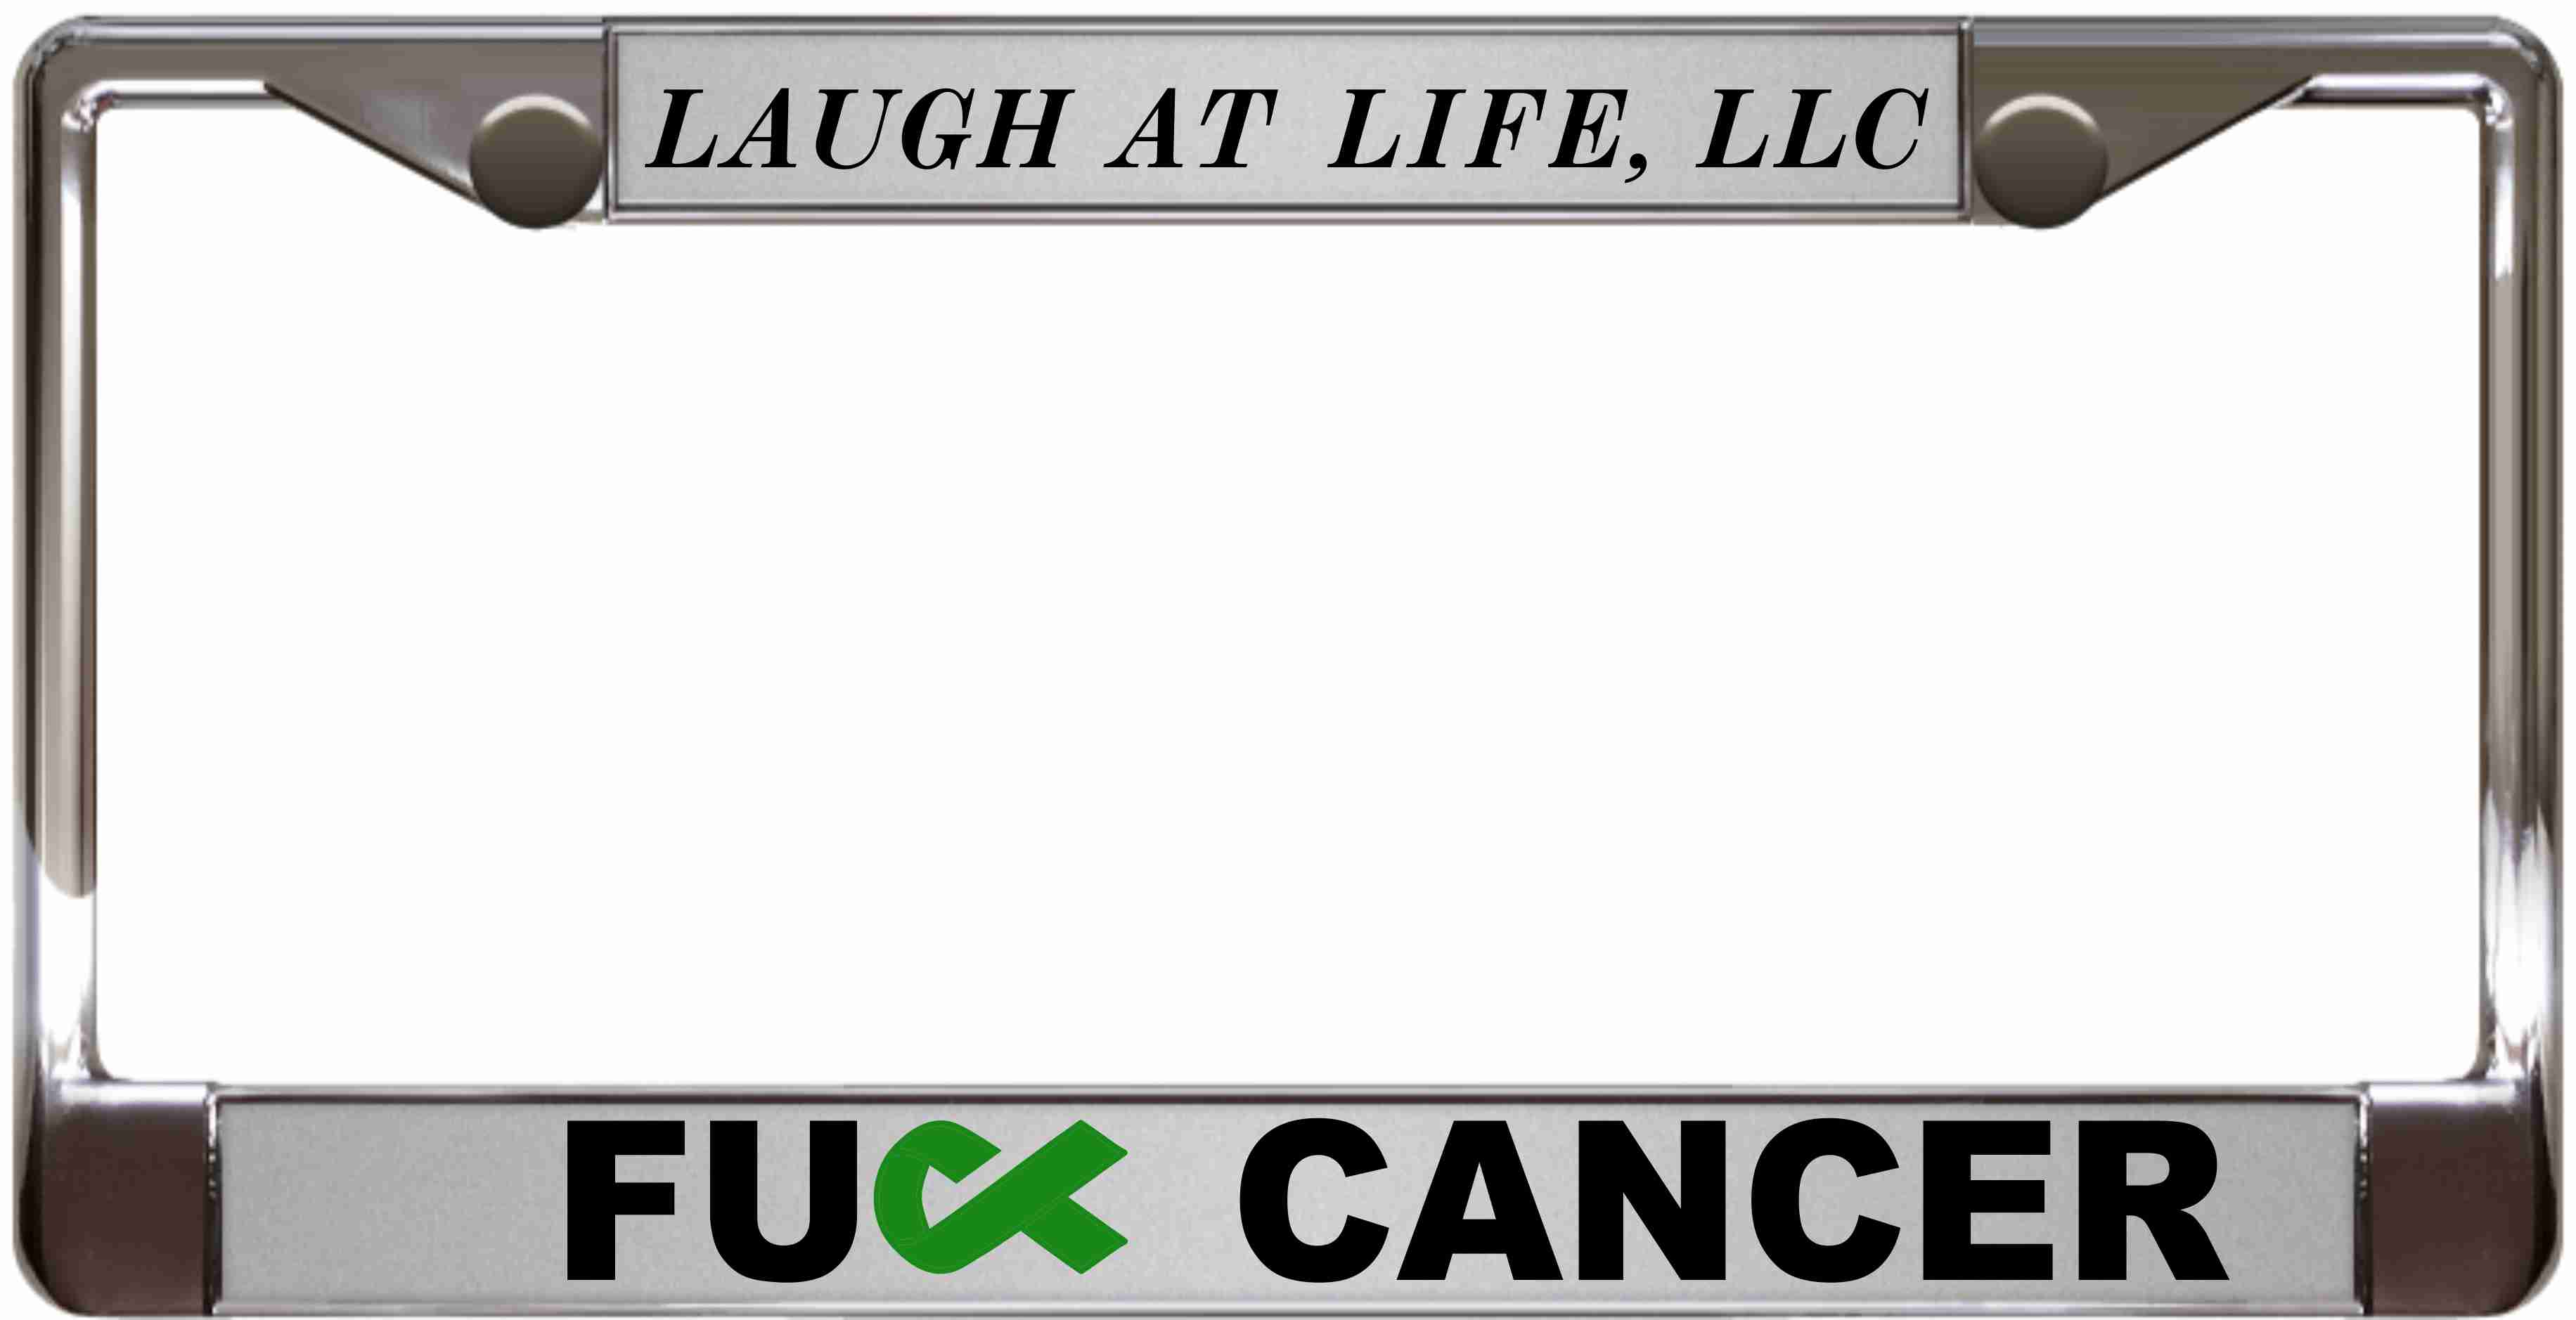 Fu cancer metal license plate frame